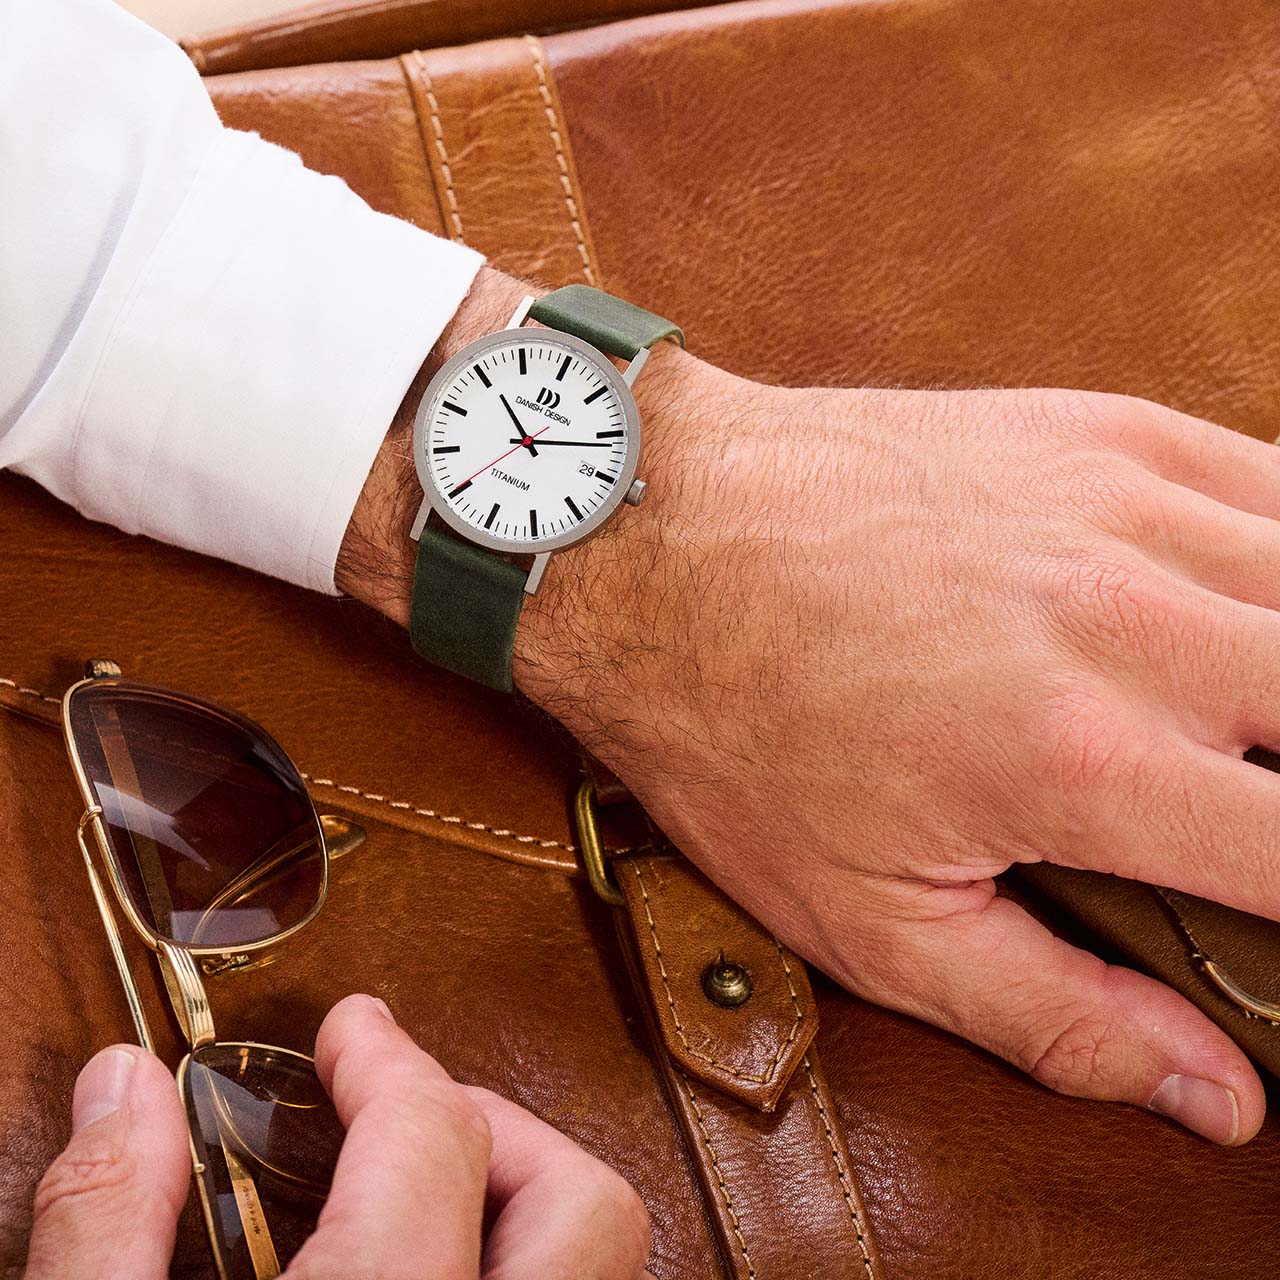 Danish Design Titanium Quartz Watches